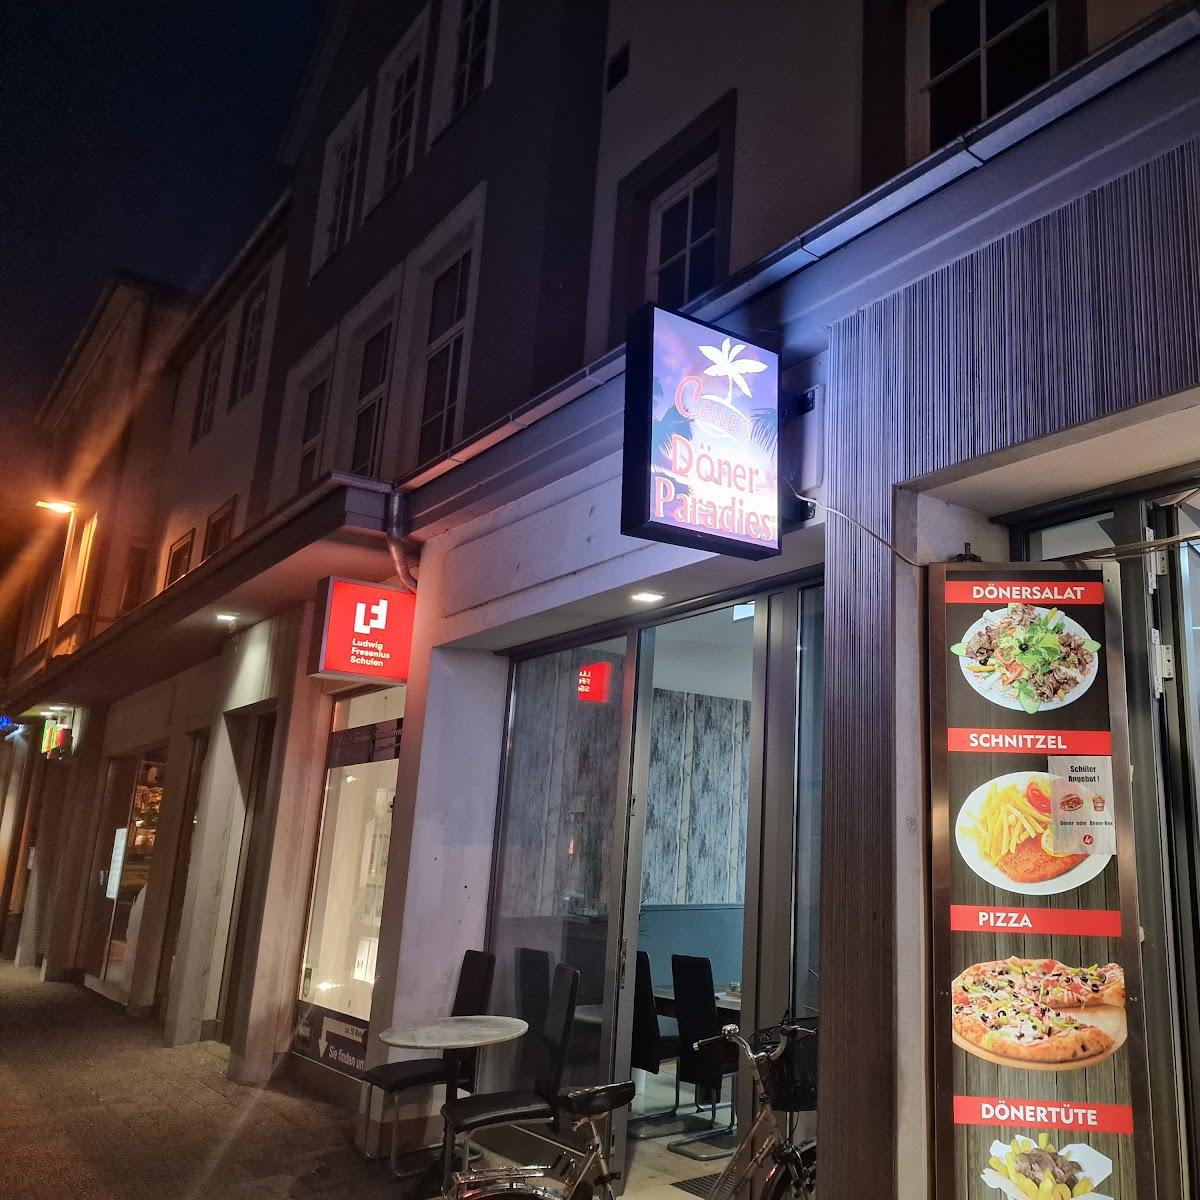 Restaurant "Celle`s Döner Paradies" in Celle